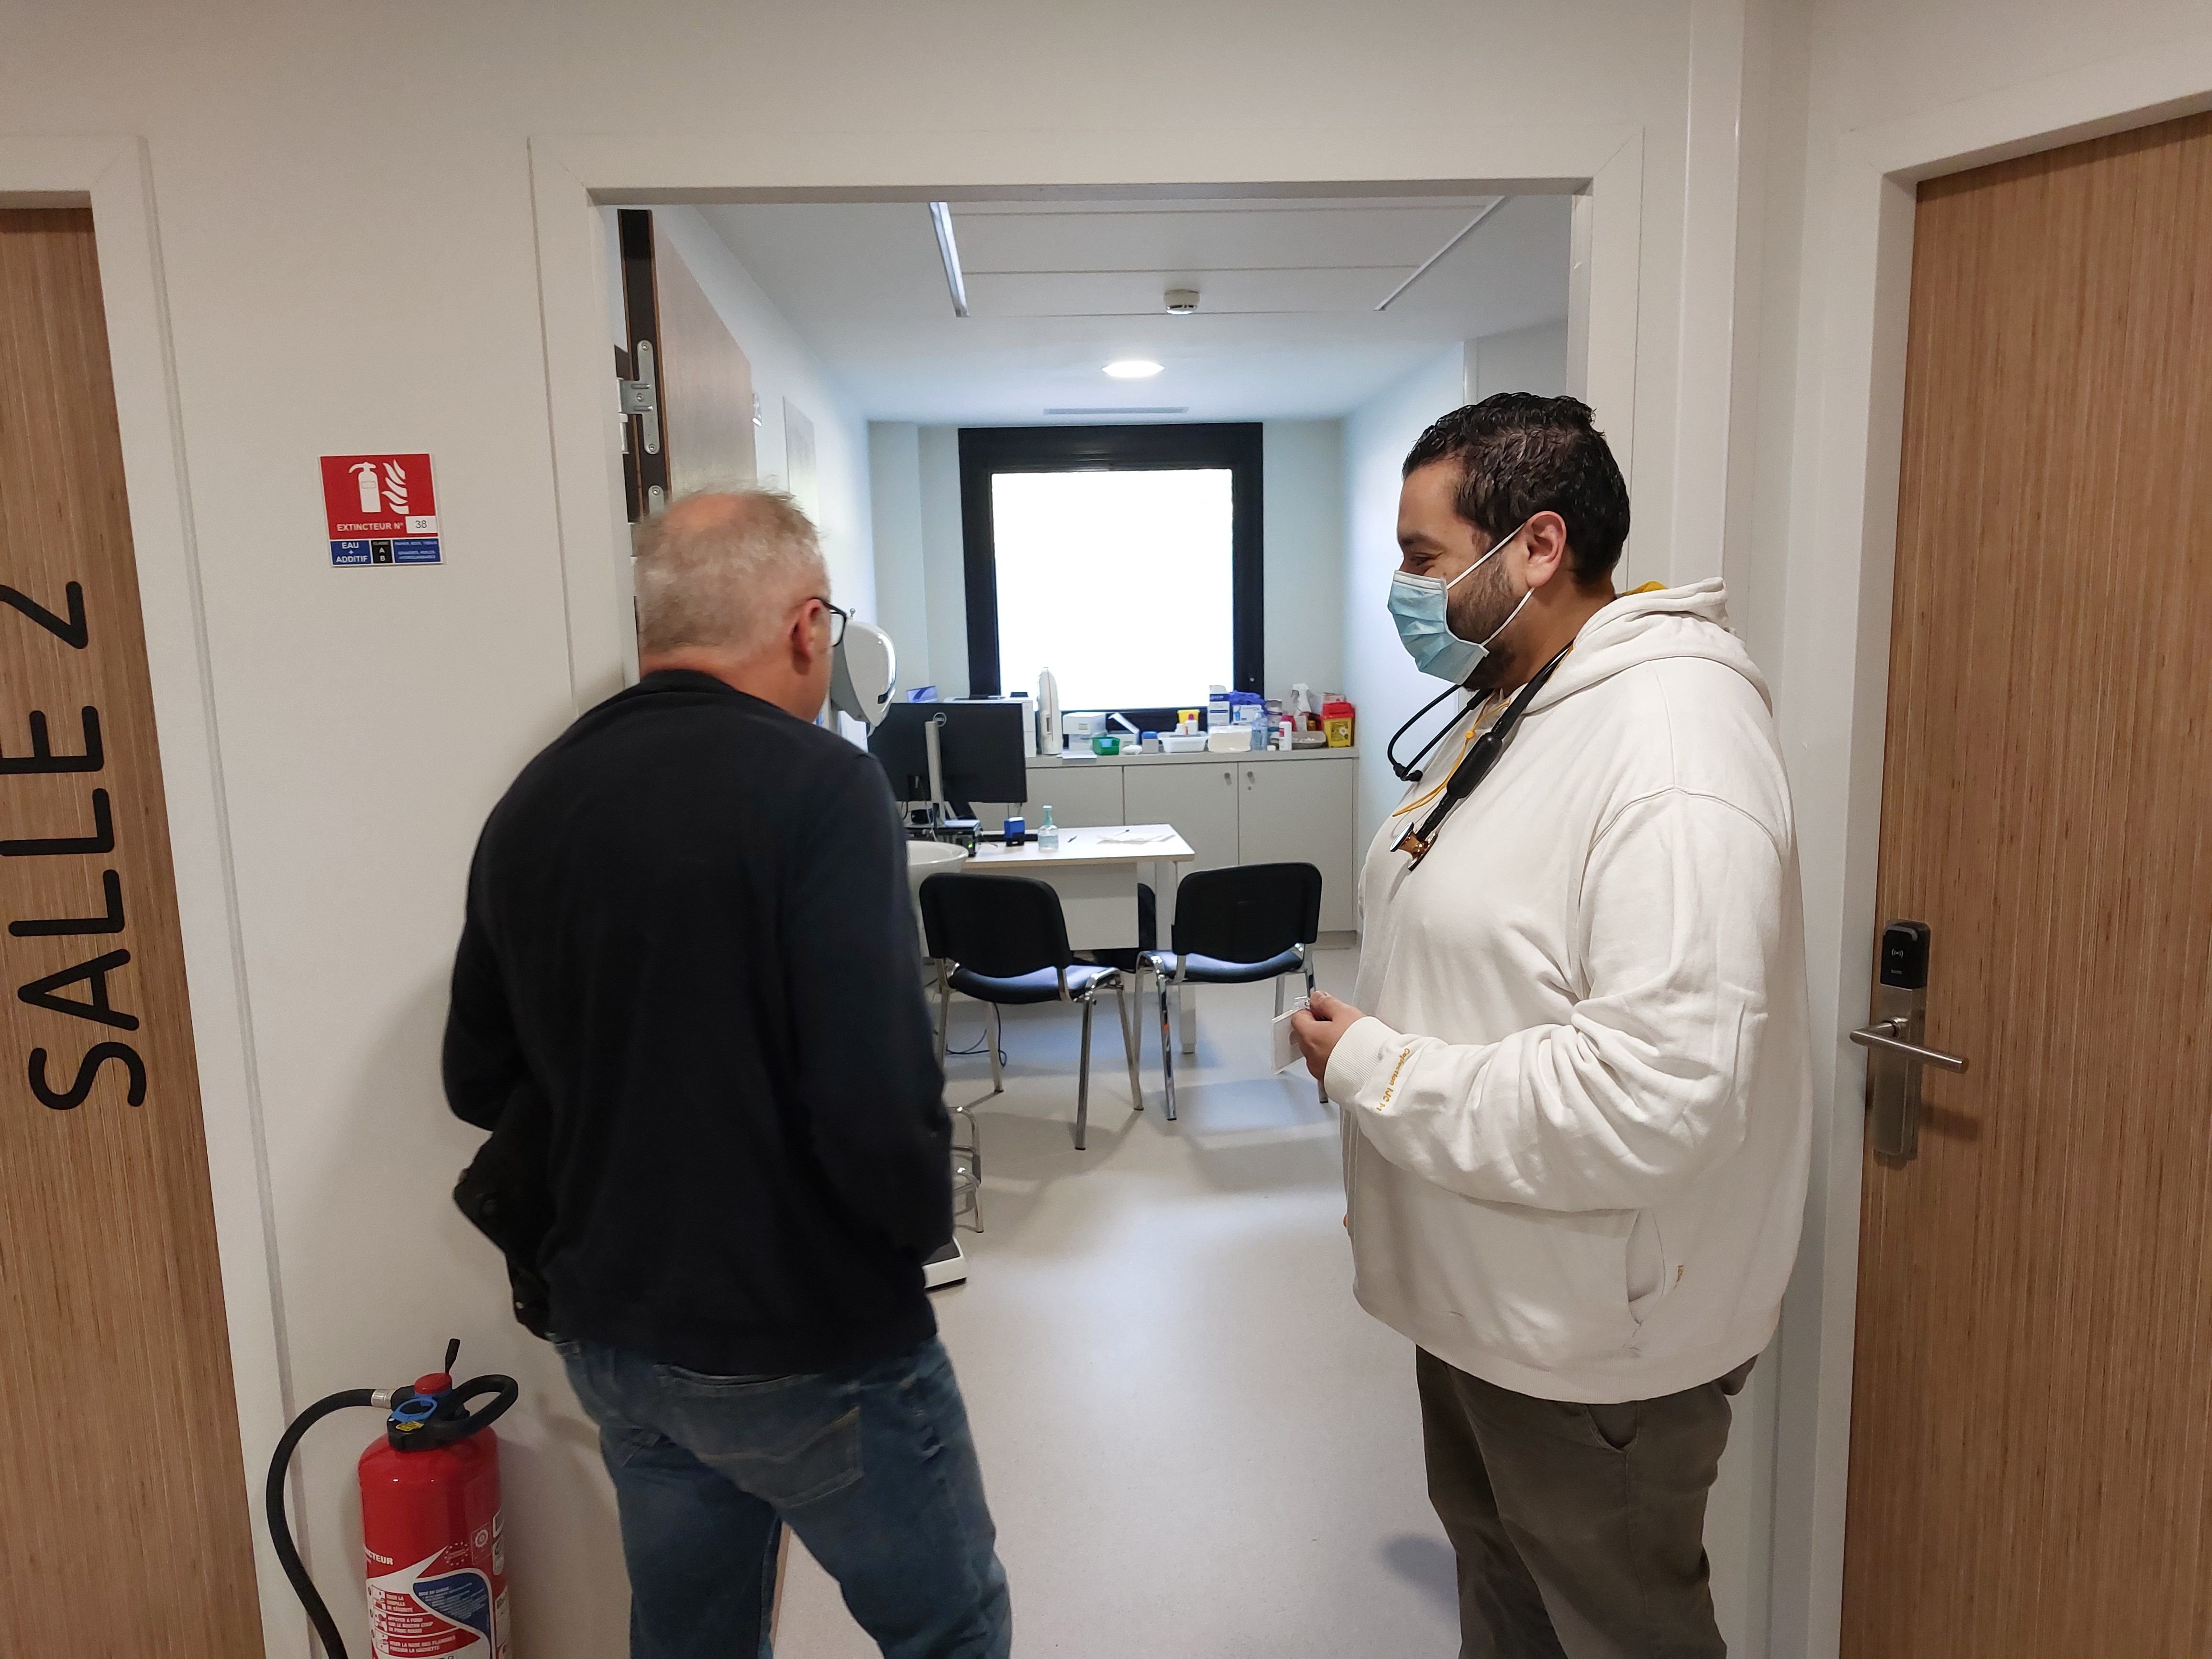 Férolles-Attilly, le 2 avril. Le docteur Houari Kaid Ali (à droite) accueille un patient au centre de soins non programmés de l'hôpital Forcilles. «Cela rend service à beaucoup de gens dans le secteur», affirme le médecin. LP/Sébastien Blondé